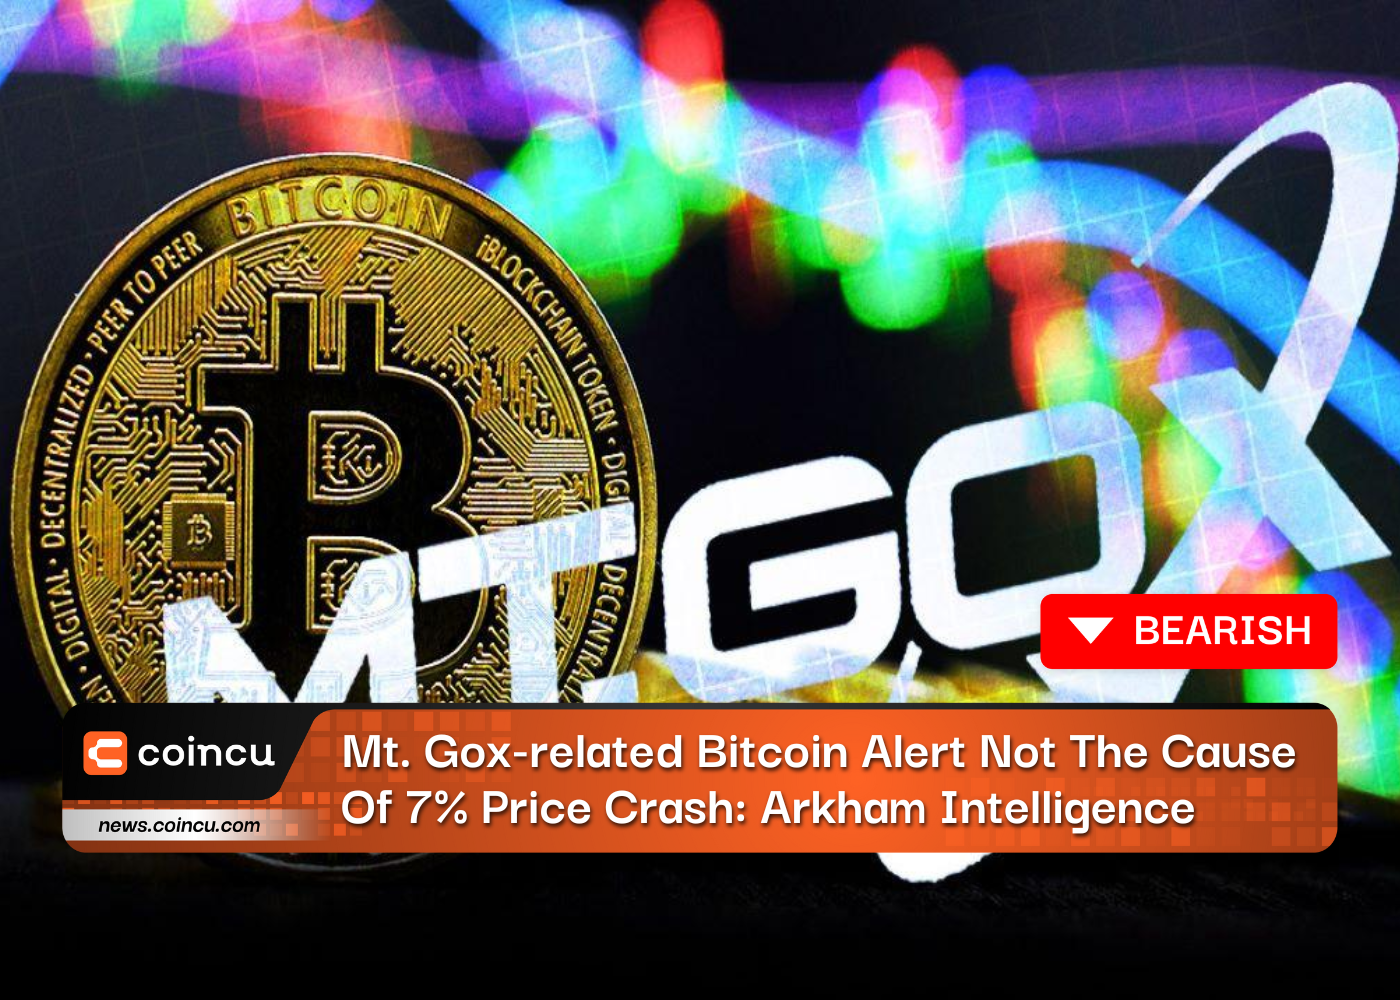 La alerta de Bitcoin relacionada con Mt. Gox no es la causa de la caída del precio del 7%: Arkham Intelligence